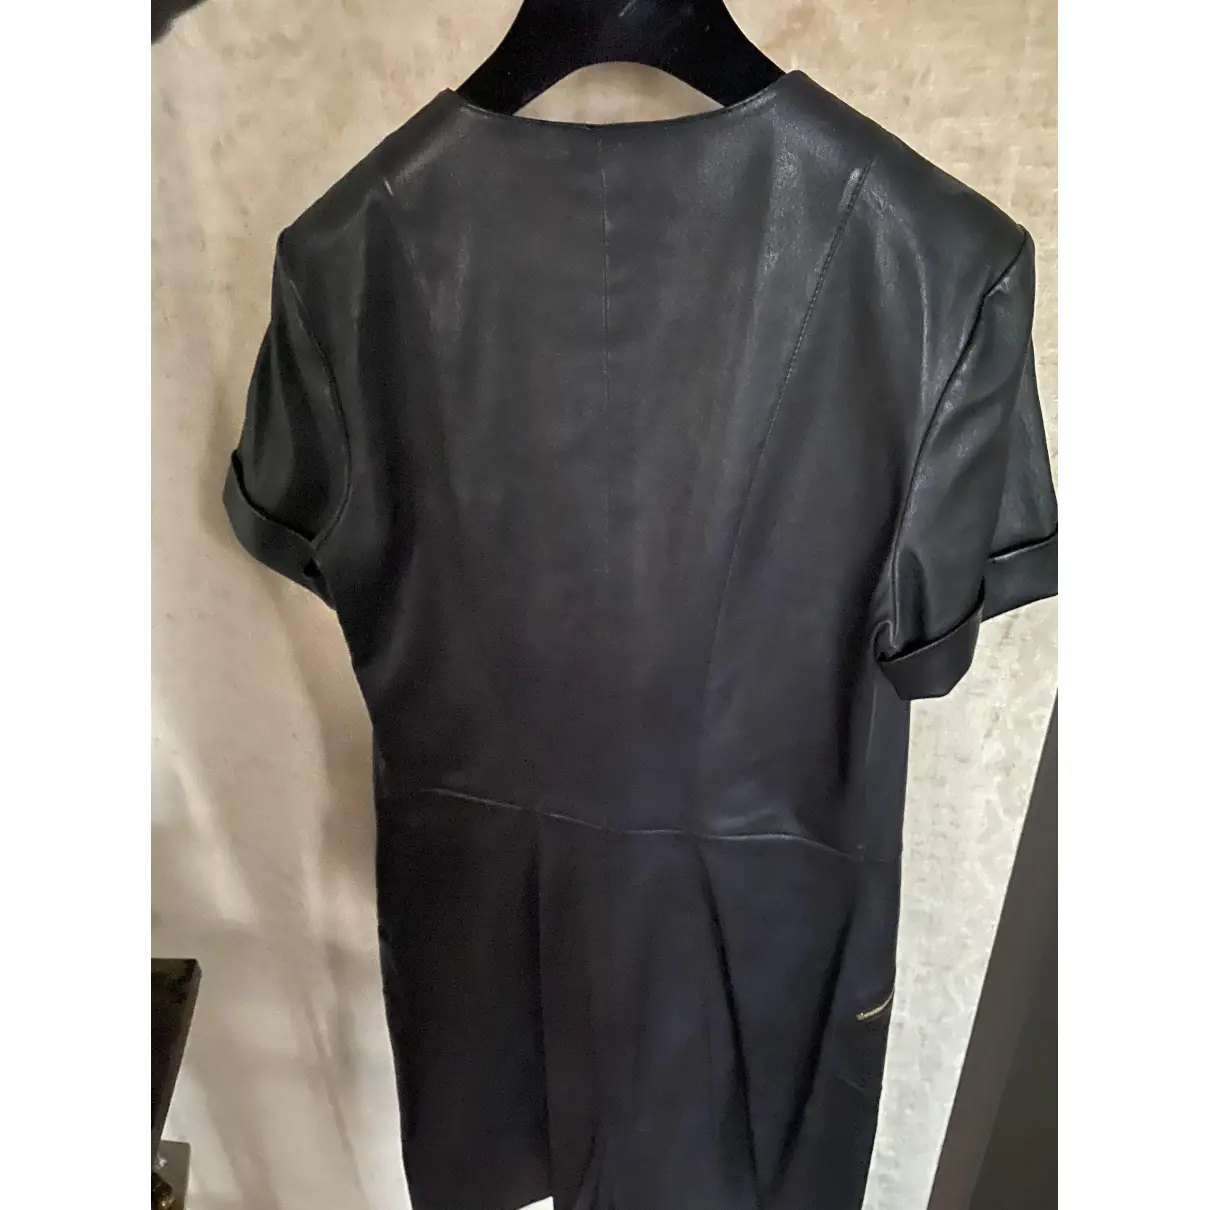 Buy Louis Vuitton Leather mini dress online